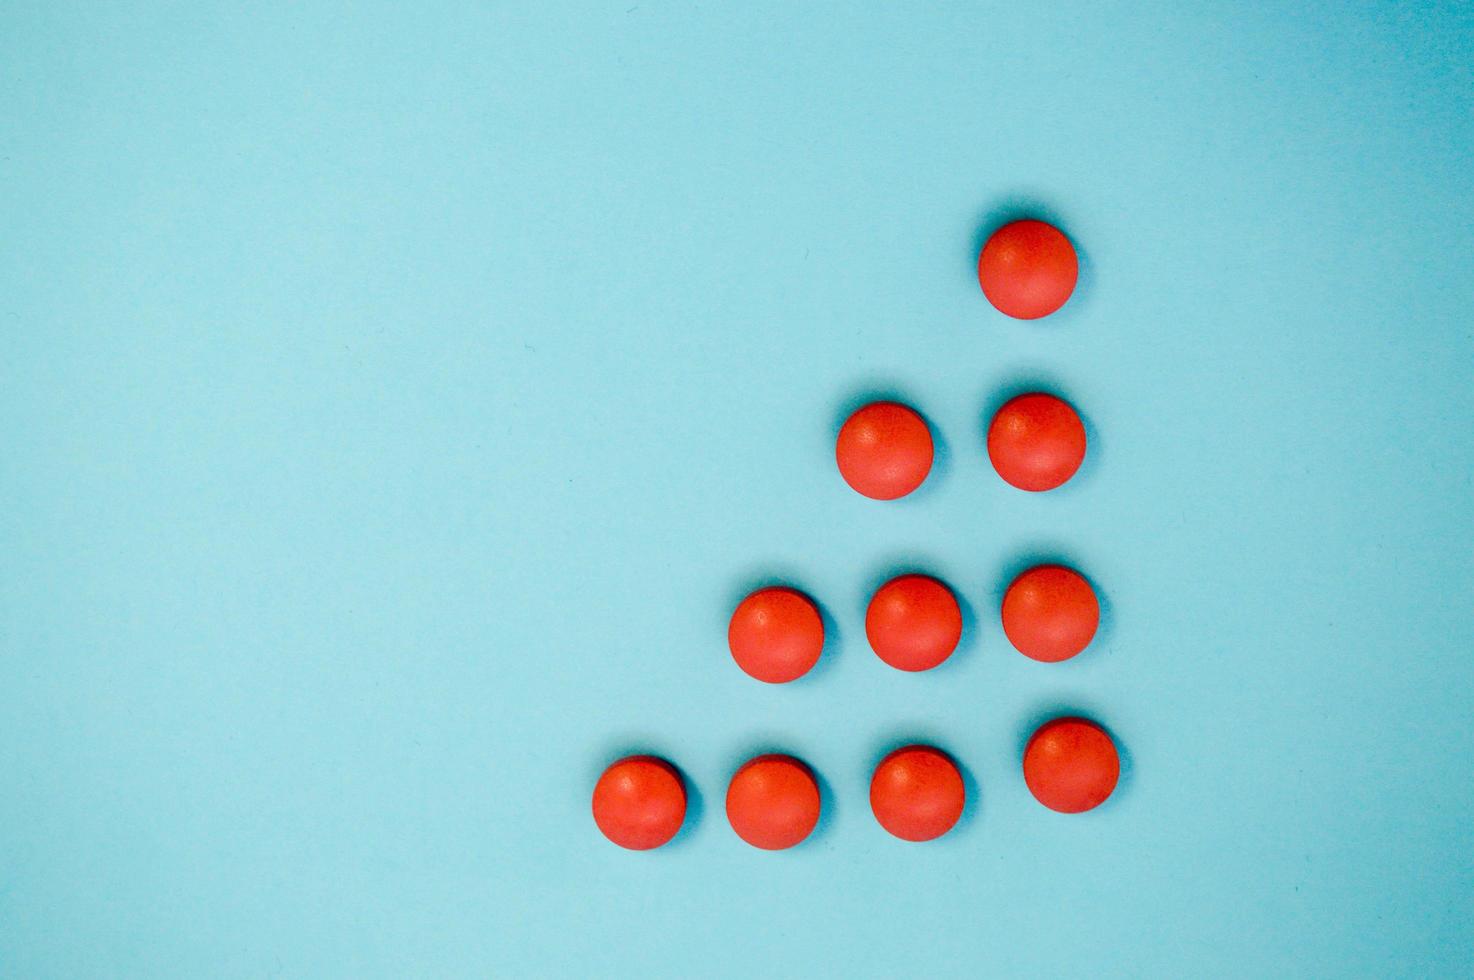 röd runda medicinsk farmaceutisk läkemedel piller lögn i de form av en triangel eller pil på en blå bakgrund foto